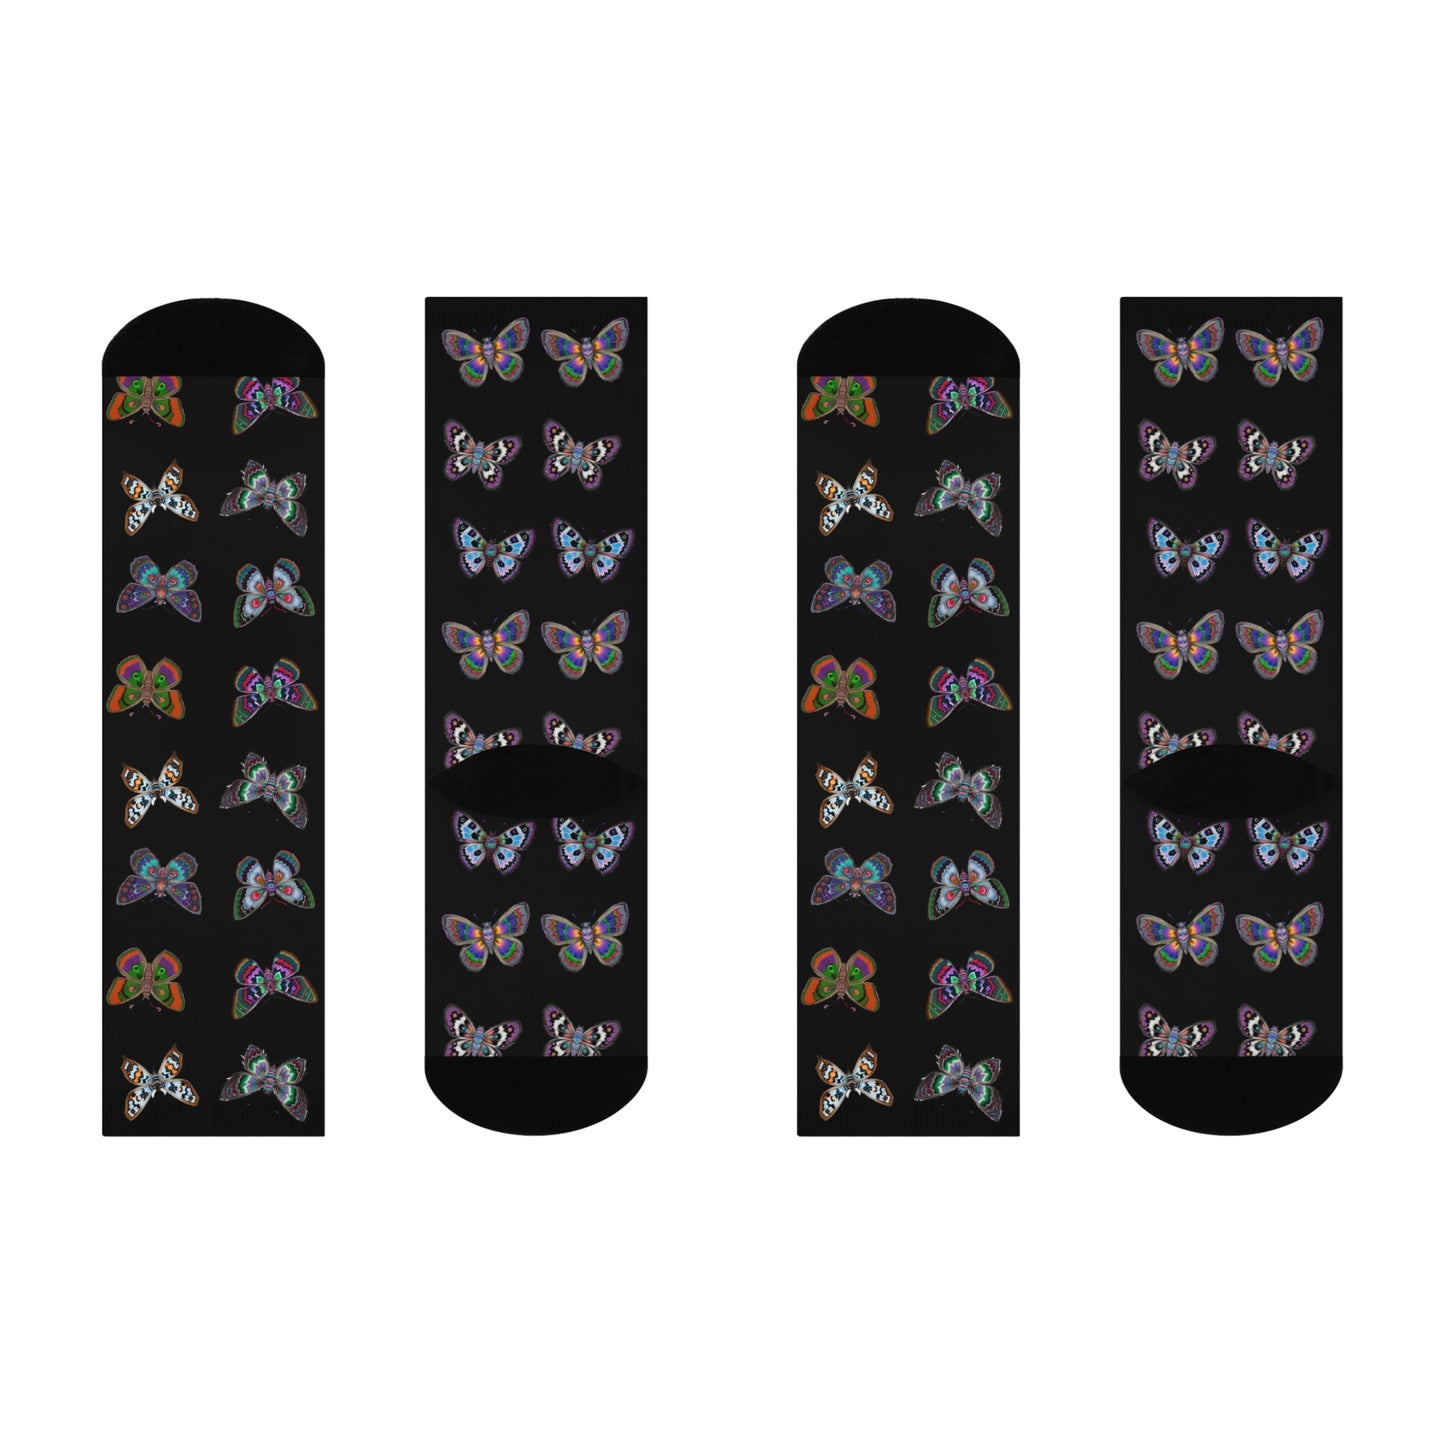 Cottageore Moth Socks (Black)